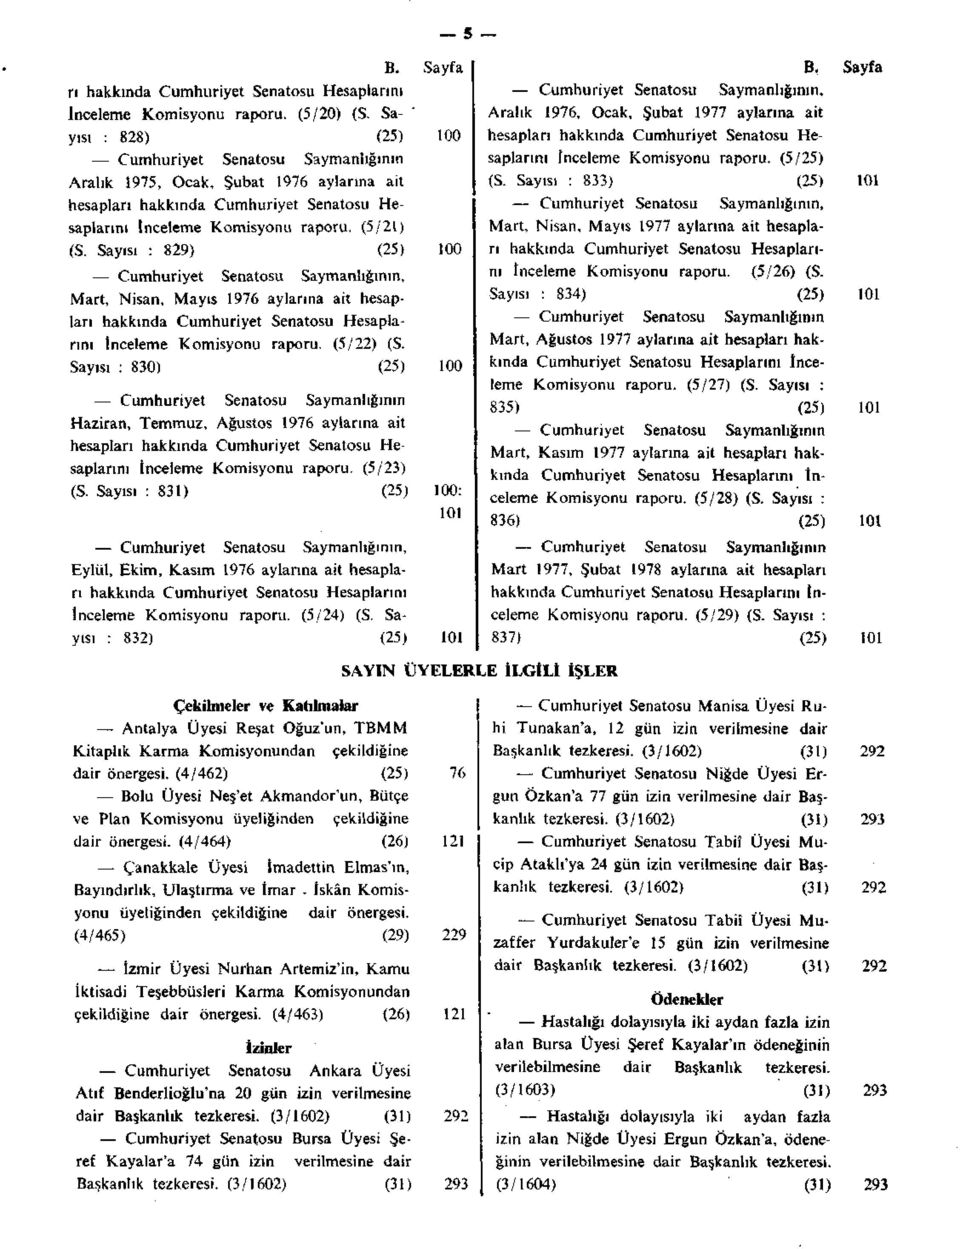 Sayısı : 829) (25) 100 Cumhuriyet Senatosu Saymanlığının, Mart, Nisan, Mayıs 1976 aylarına ait hesapları hakkında Cumhuriyet Senatosu Hesaplarını İnceleme Komisyonu raporu, (5/22) (S.